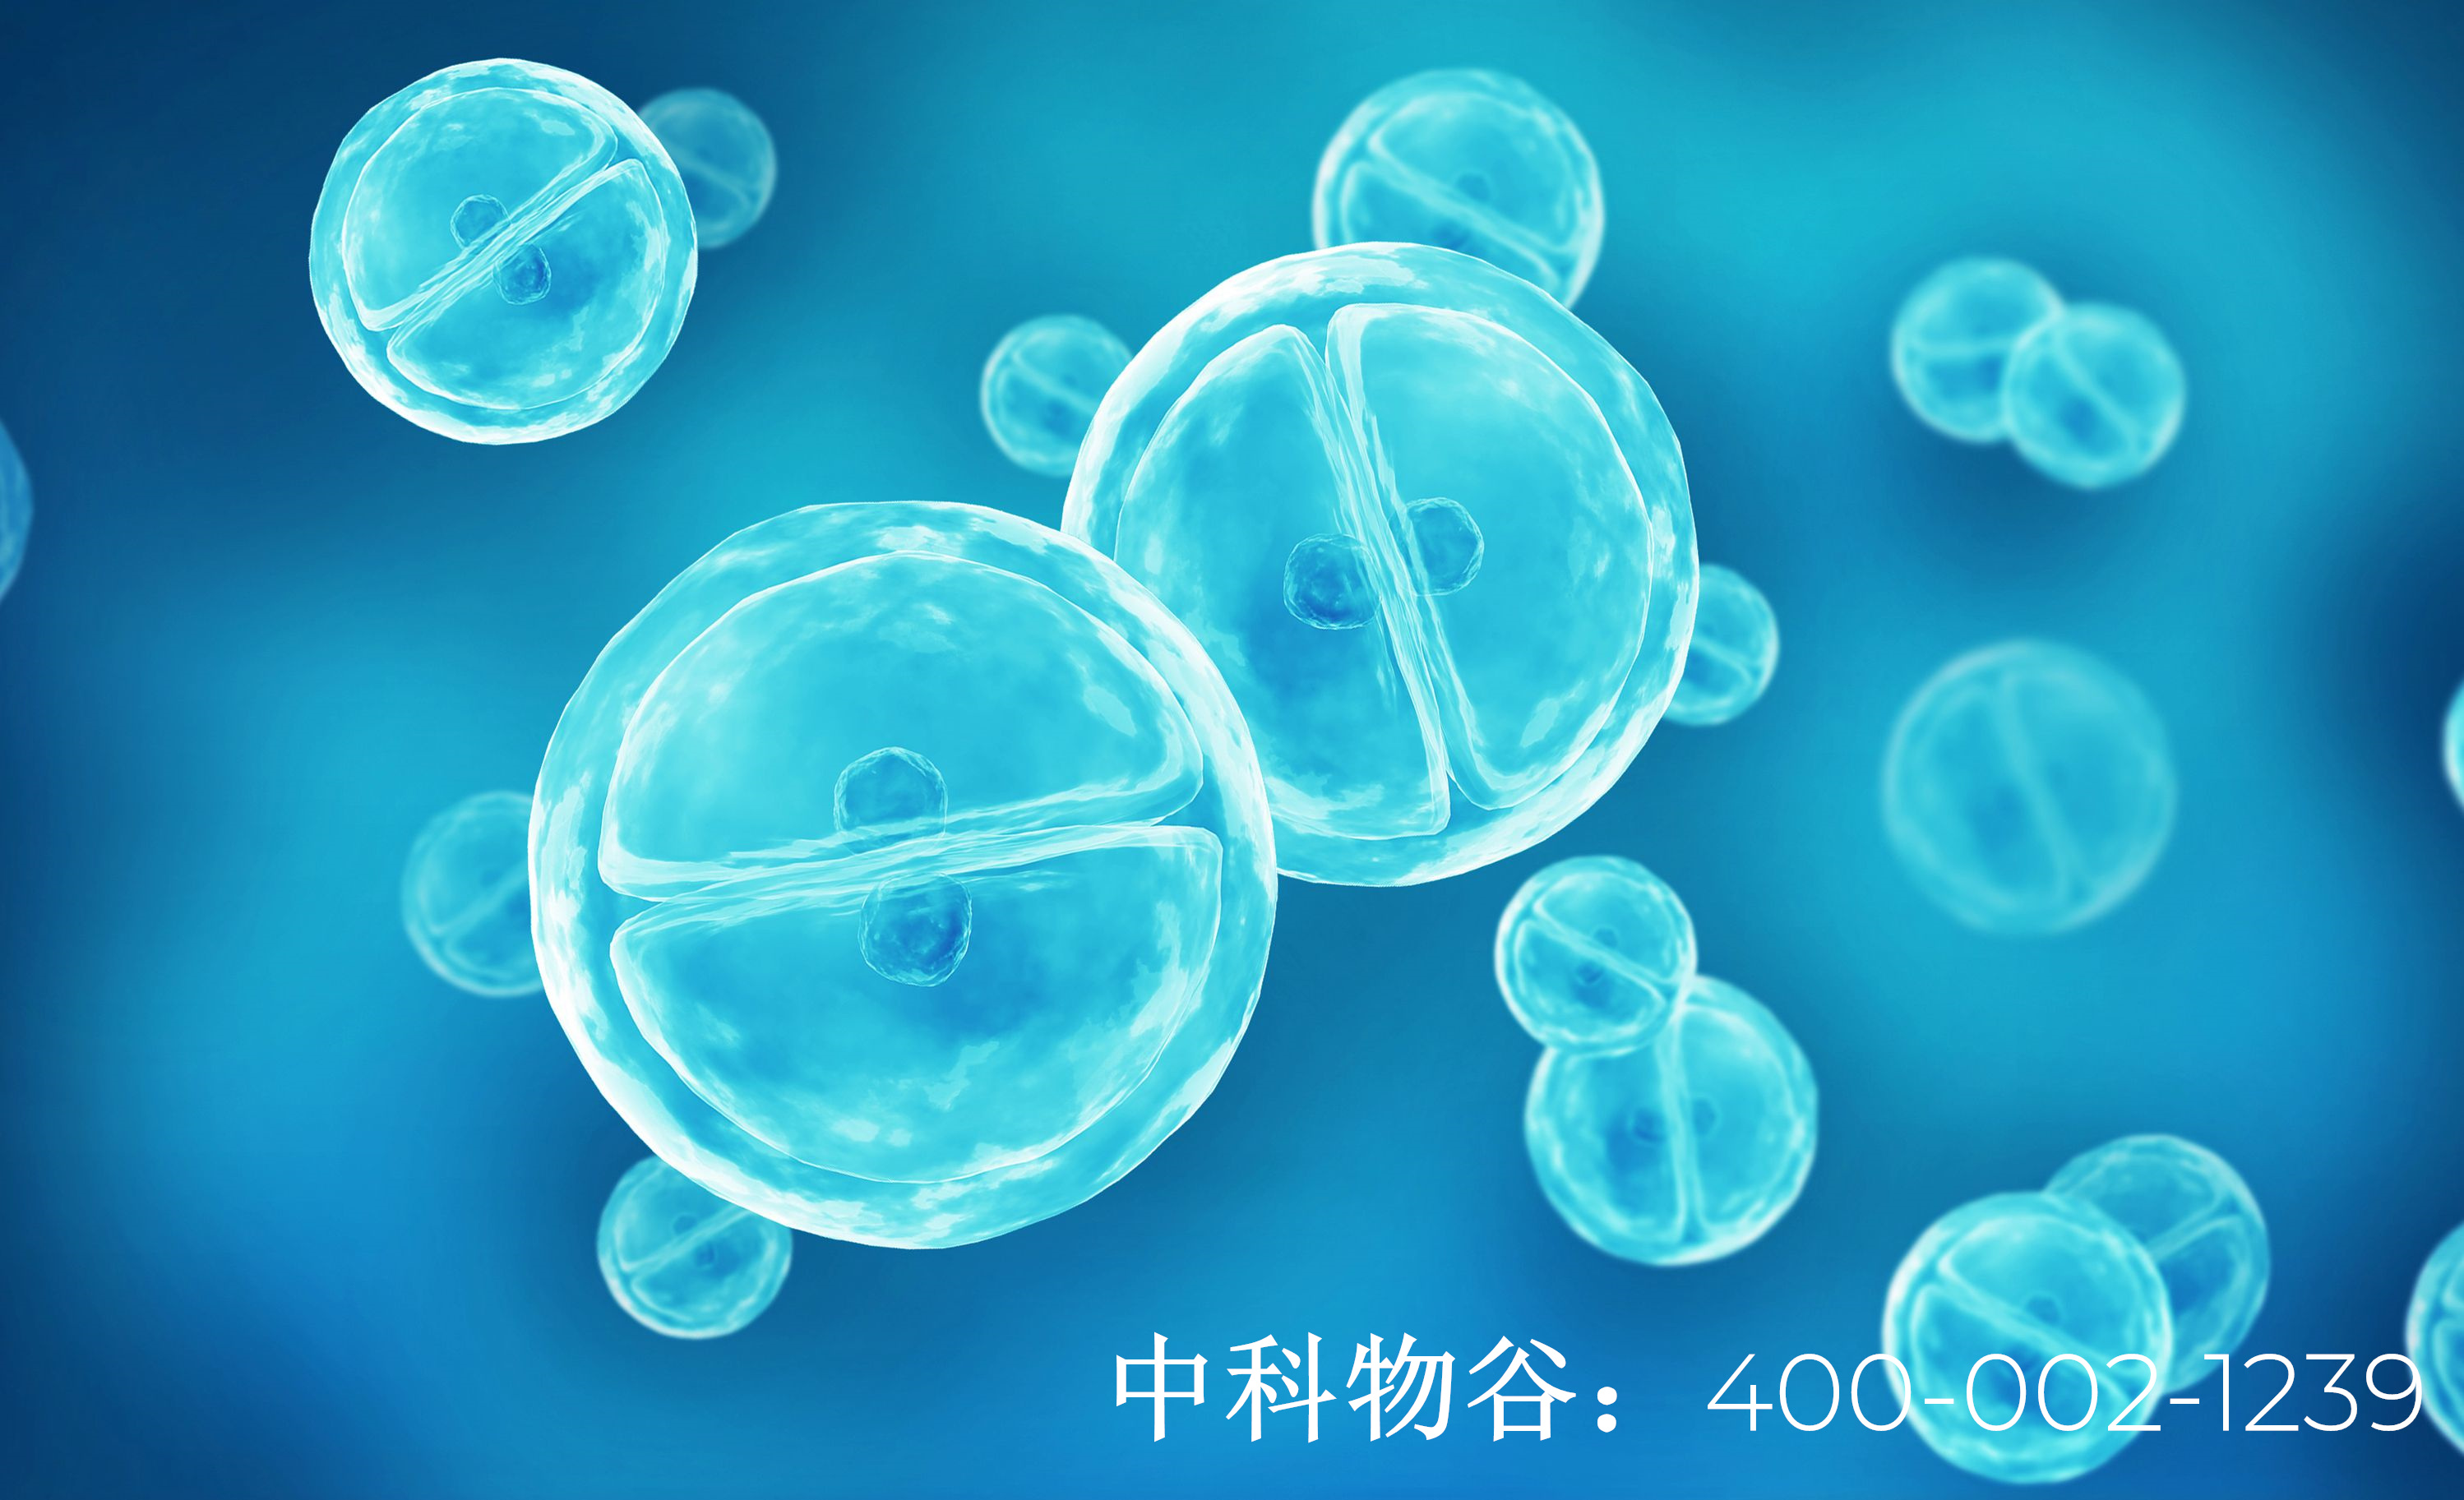 中国干细胞治疗糖尿病进展怎么样